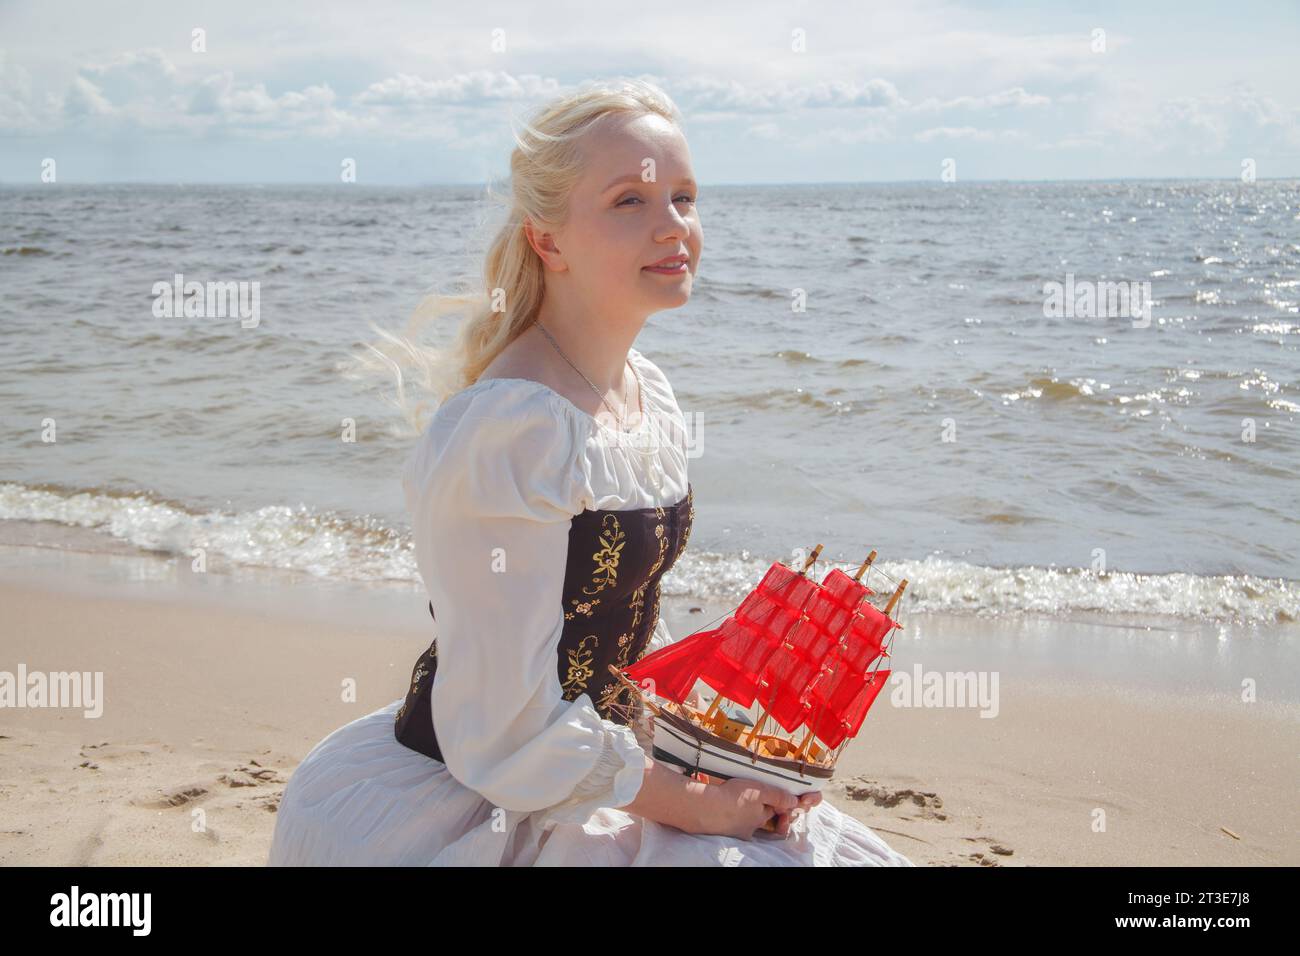 Ritratto di una giovane e romantica modella bionda in abito retrò che regge una barca a vela rossa sulla spiaggia di mare Foto Stock